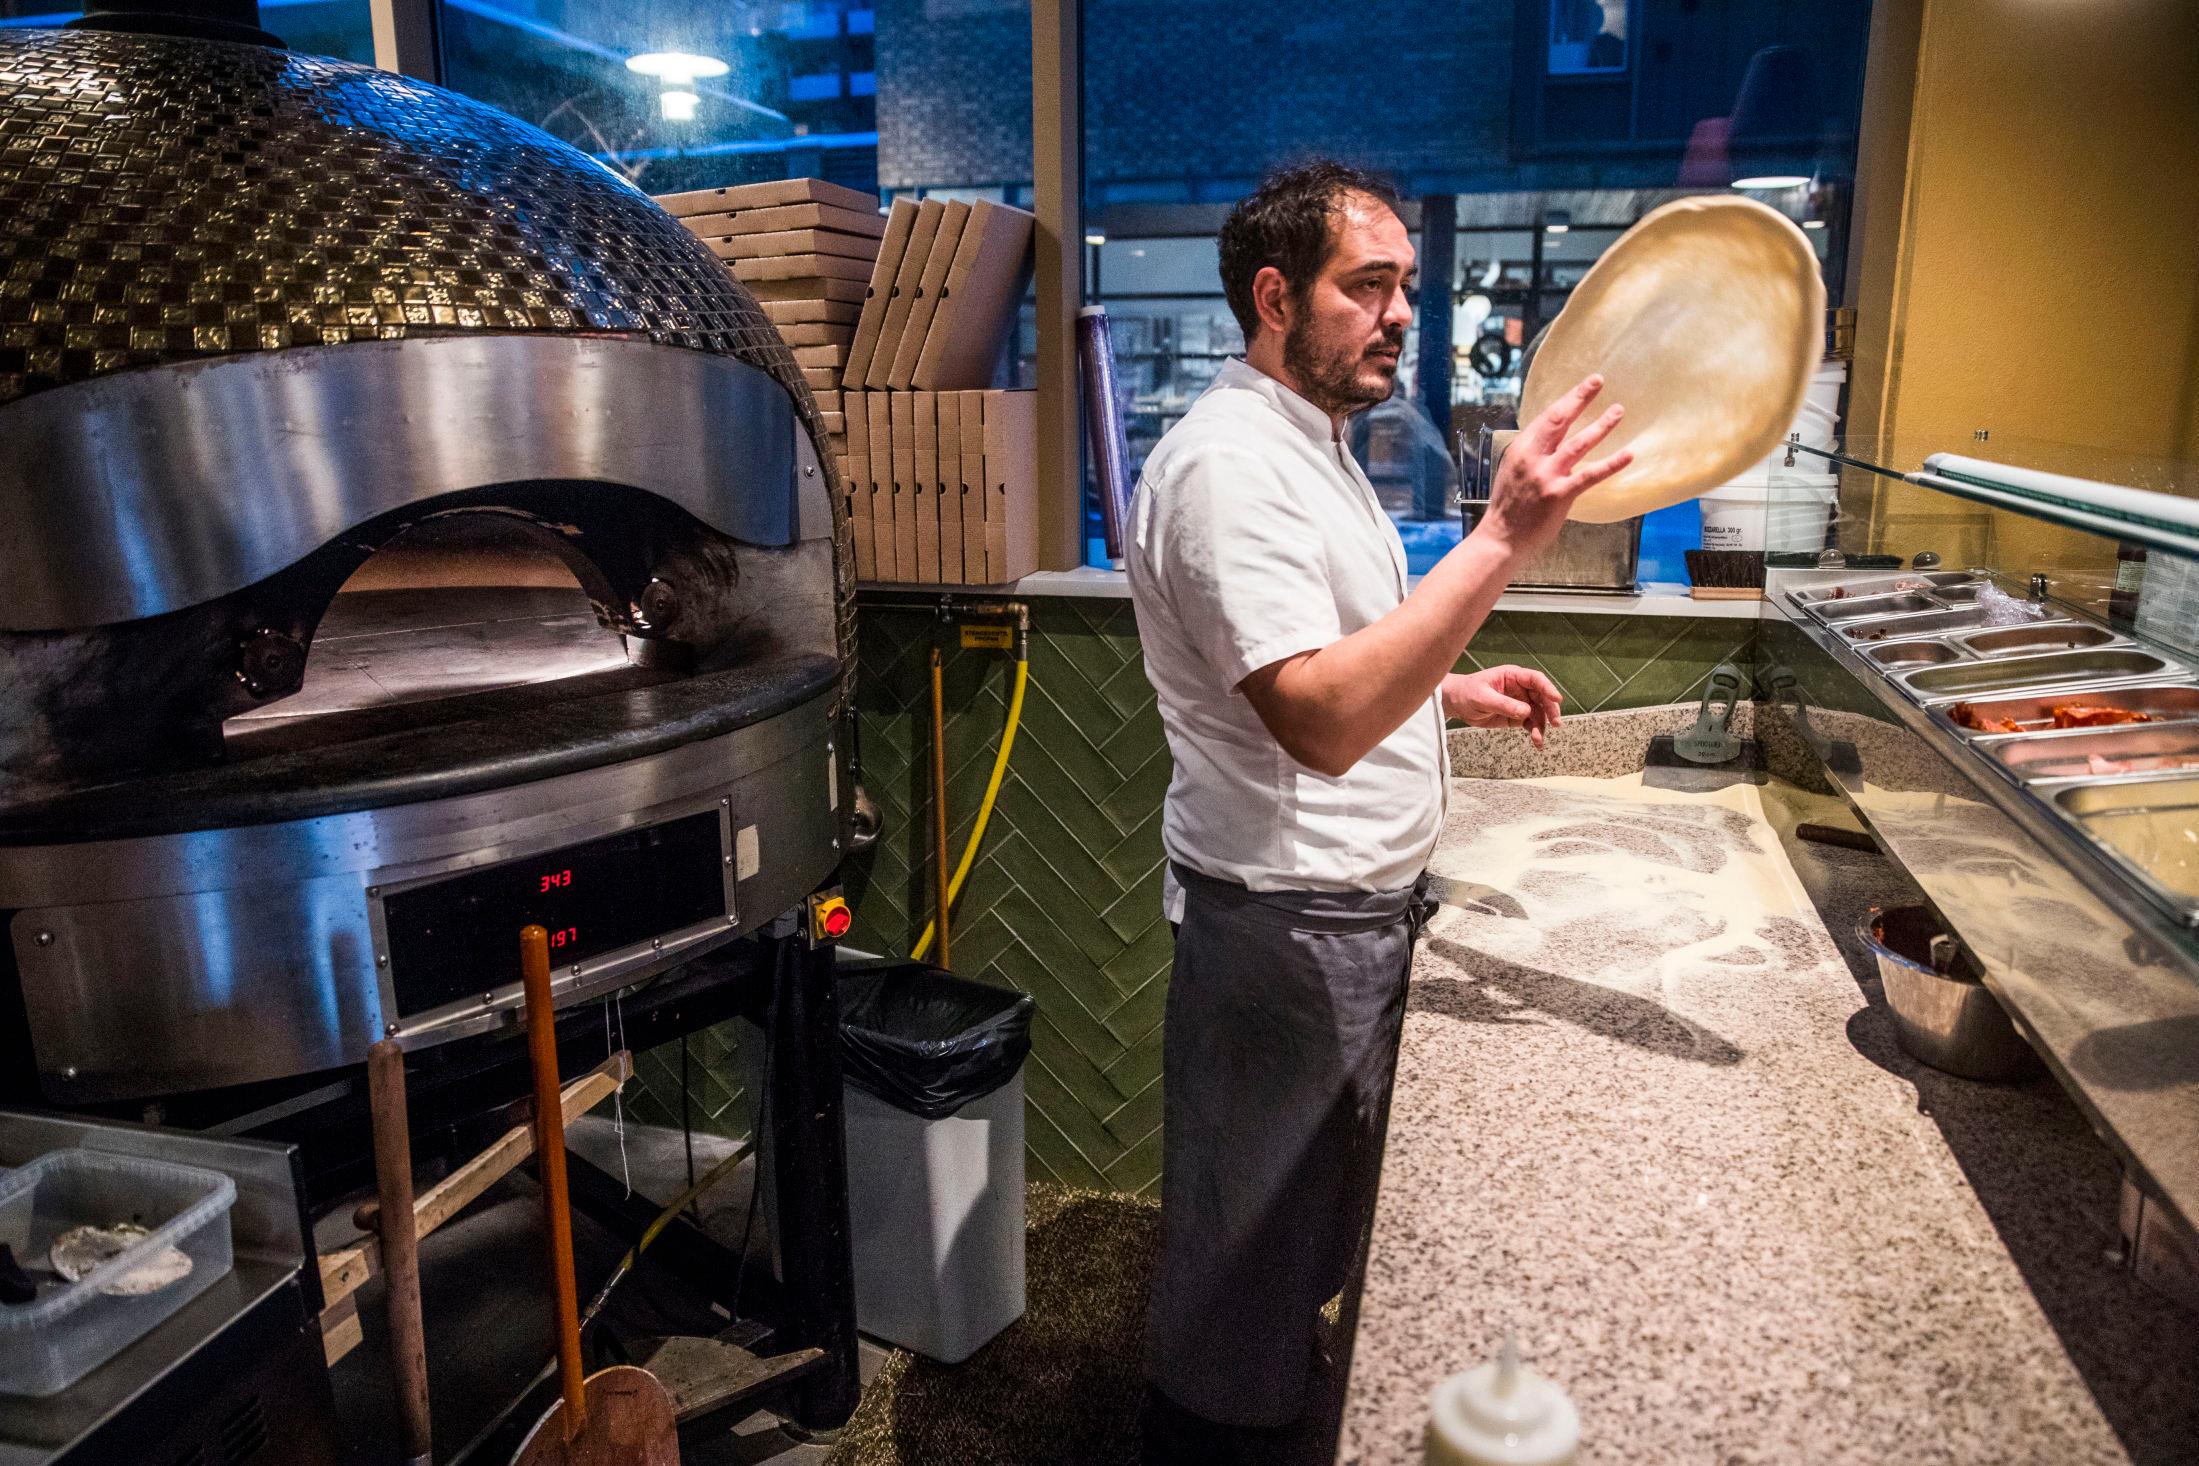 ITALIENSK-INSPIRERT: Lupo lager italienske retter fra bunnen, blant annet pizza. Foto: Frode Hansen/VG